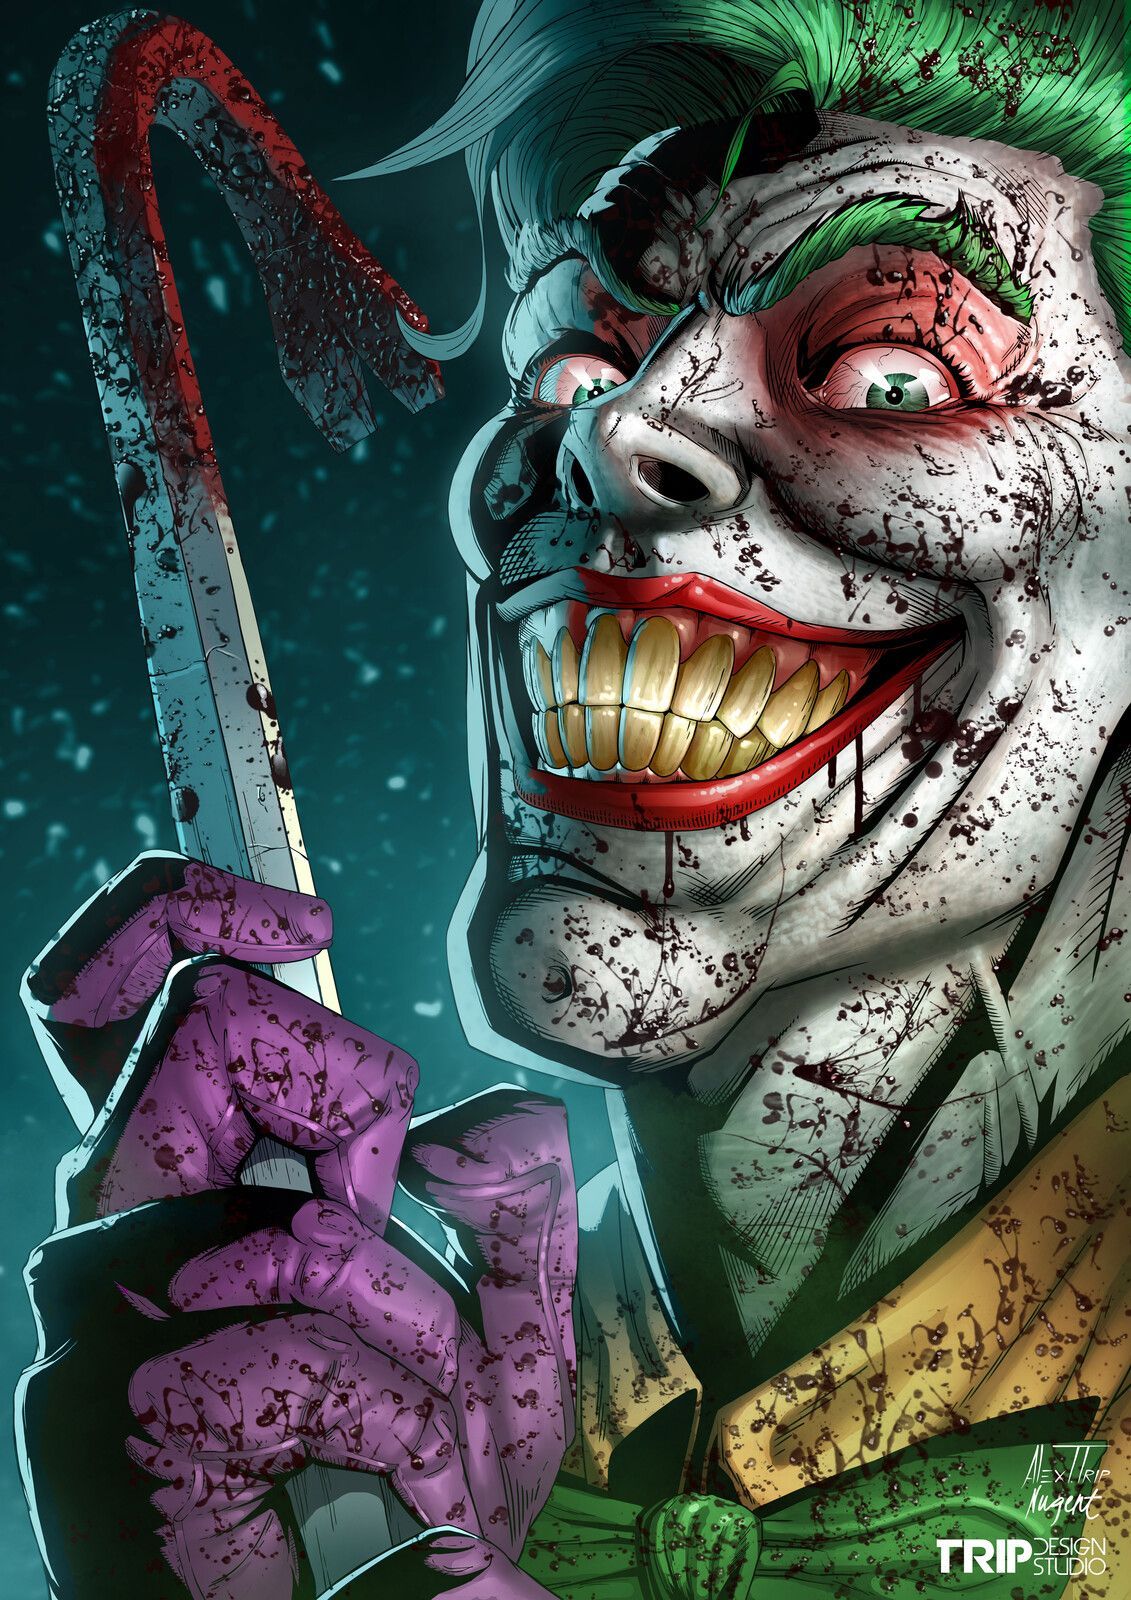 Marvelous The Joker Comic Wallpaper Hd for Imac 1920x1440PX 